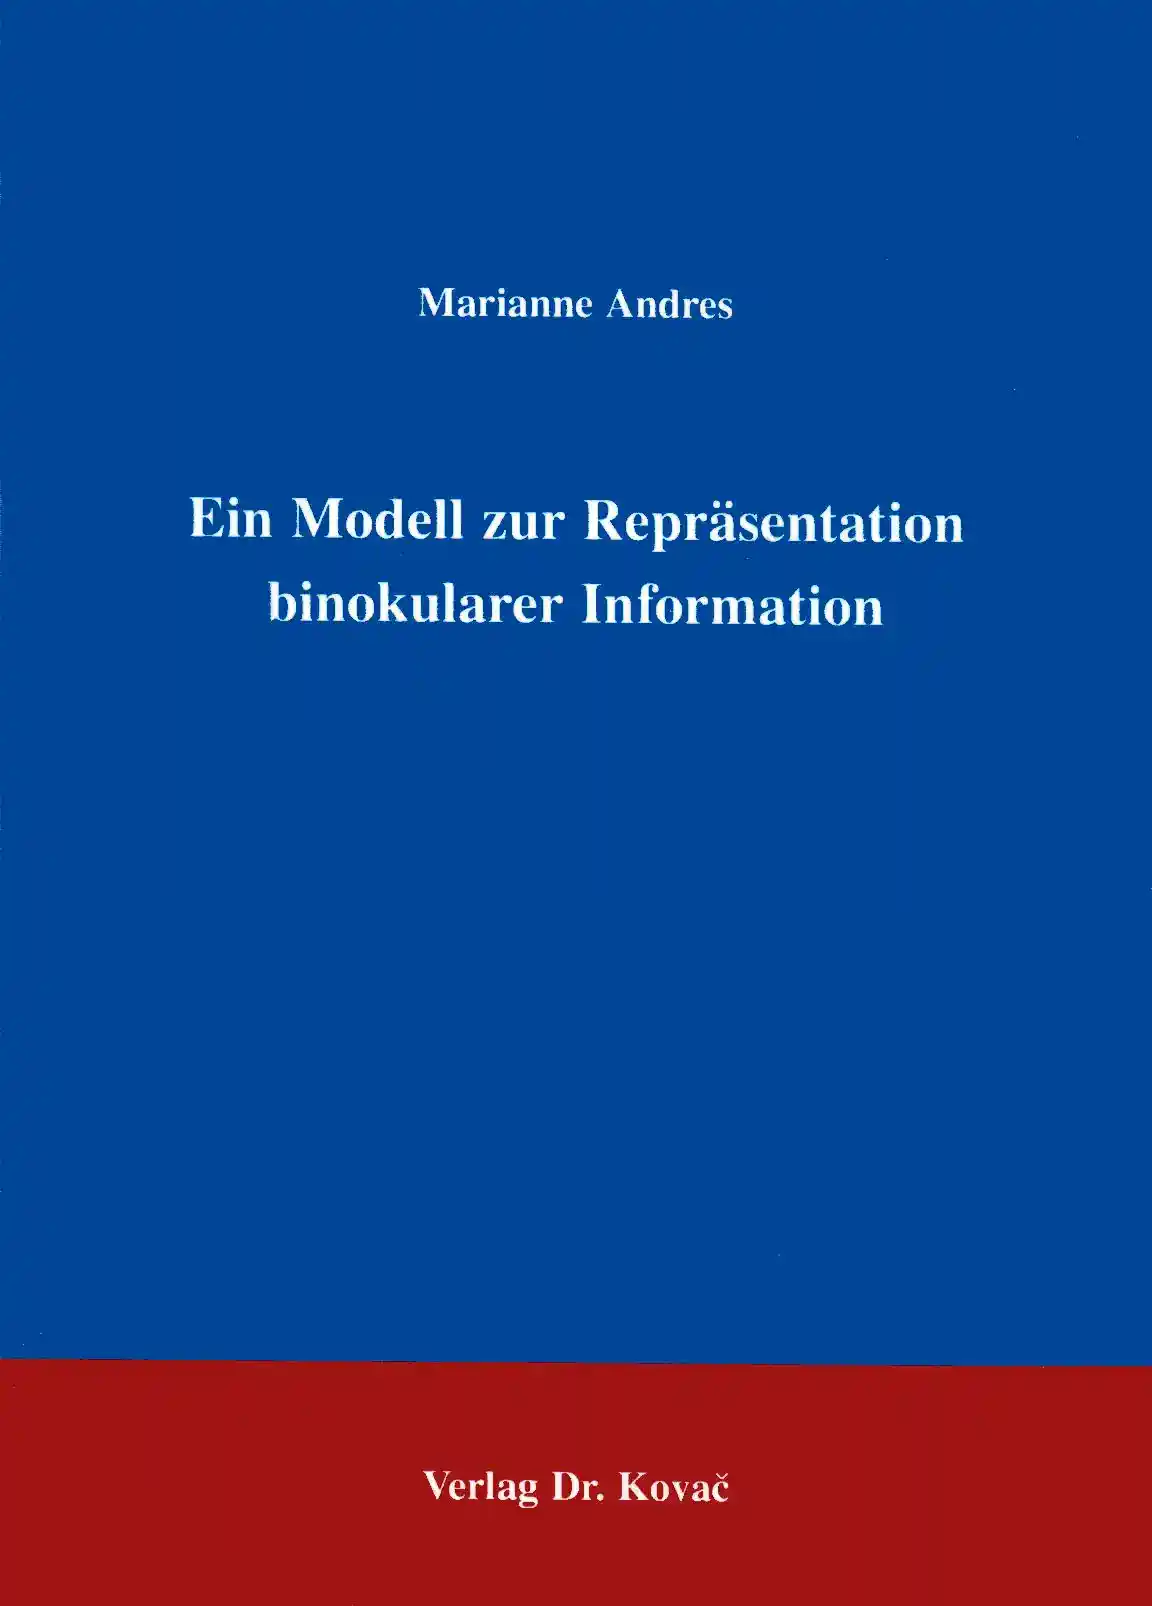  Forschungsarbeit: Ein Modell zur Repräsentation binokularer Information